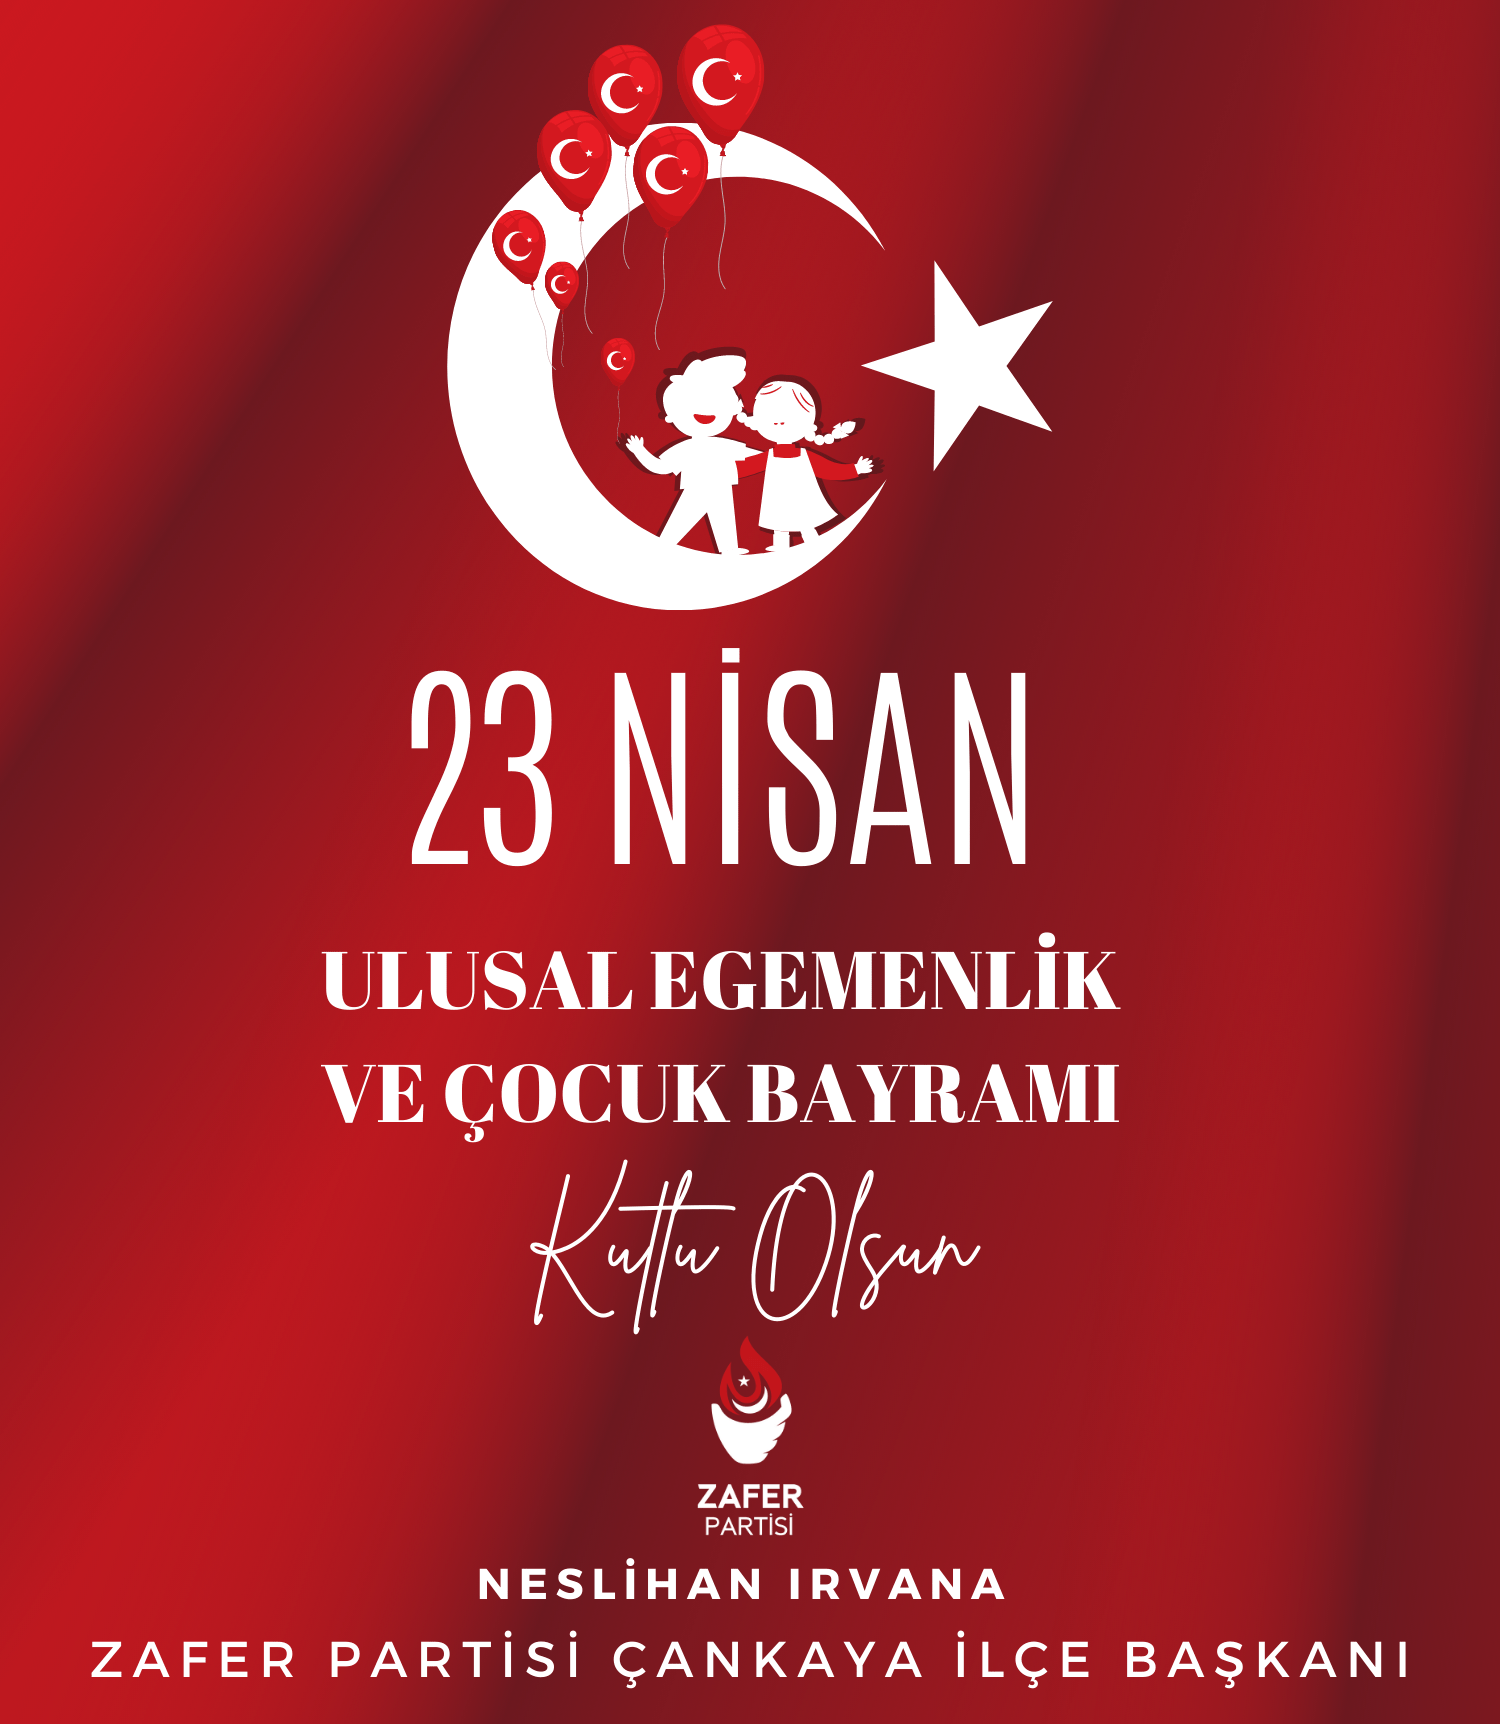 23 Nisan Ulusal Egemenlik ve Çocuk Bayramınız Kutlu Olsun.”